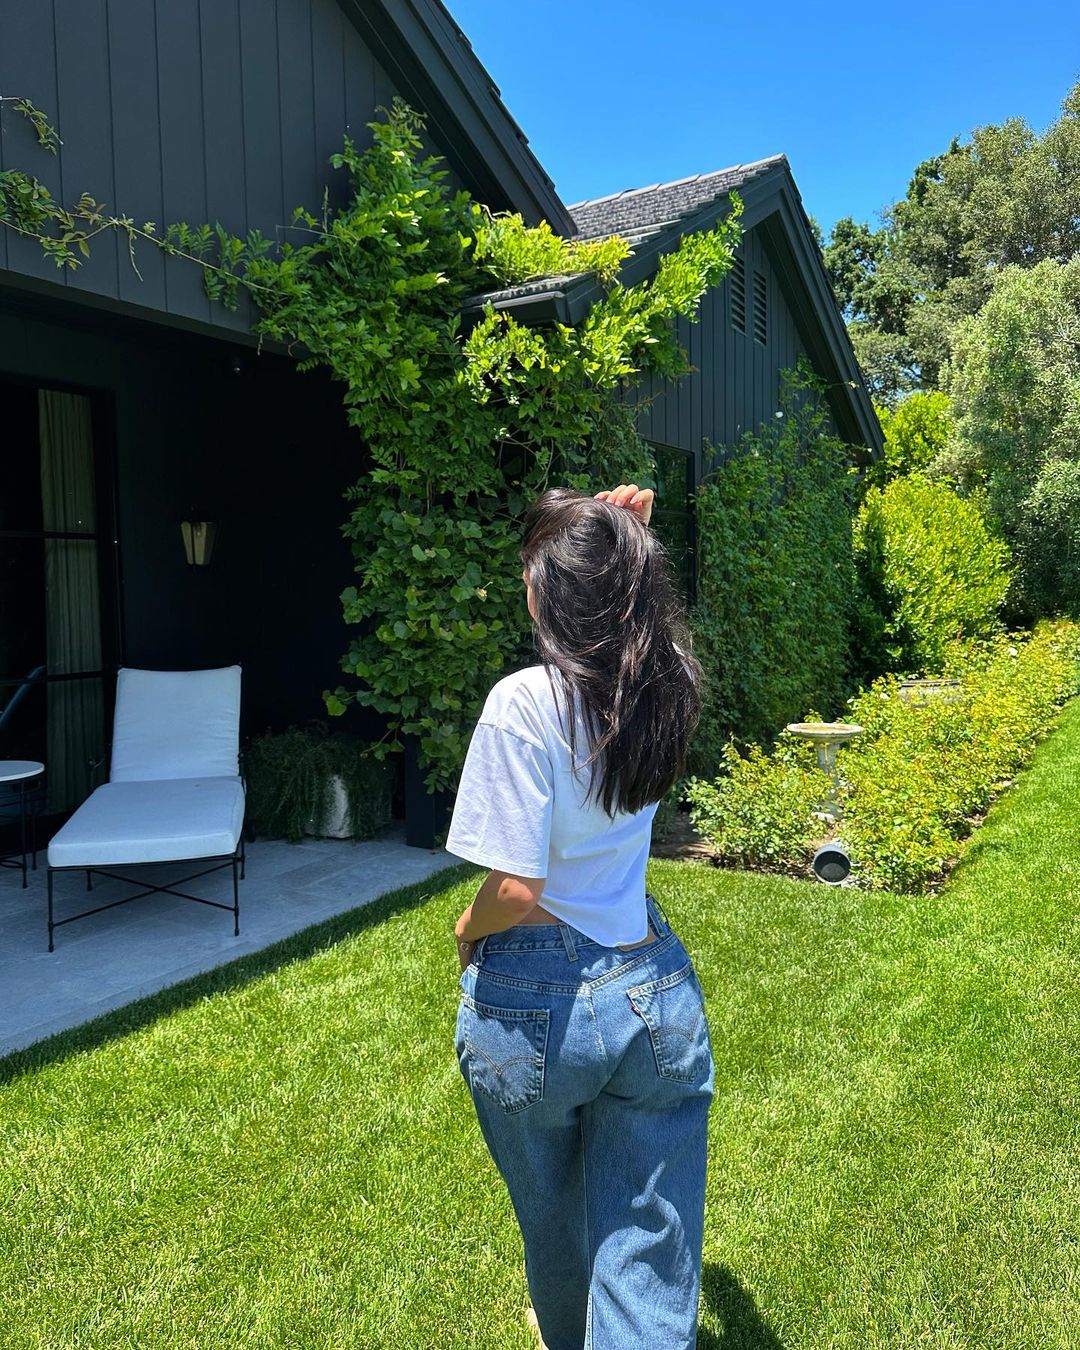 Kylie Jenner: Black Blazer, Blue Jeans